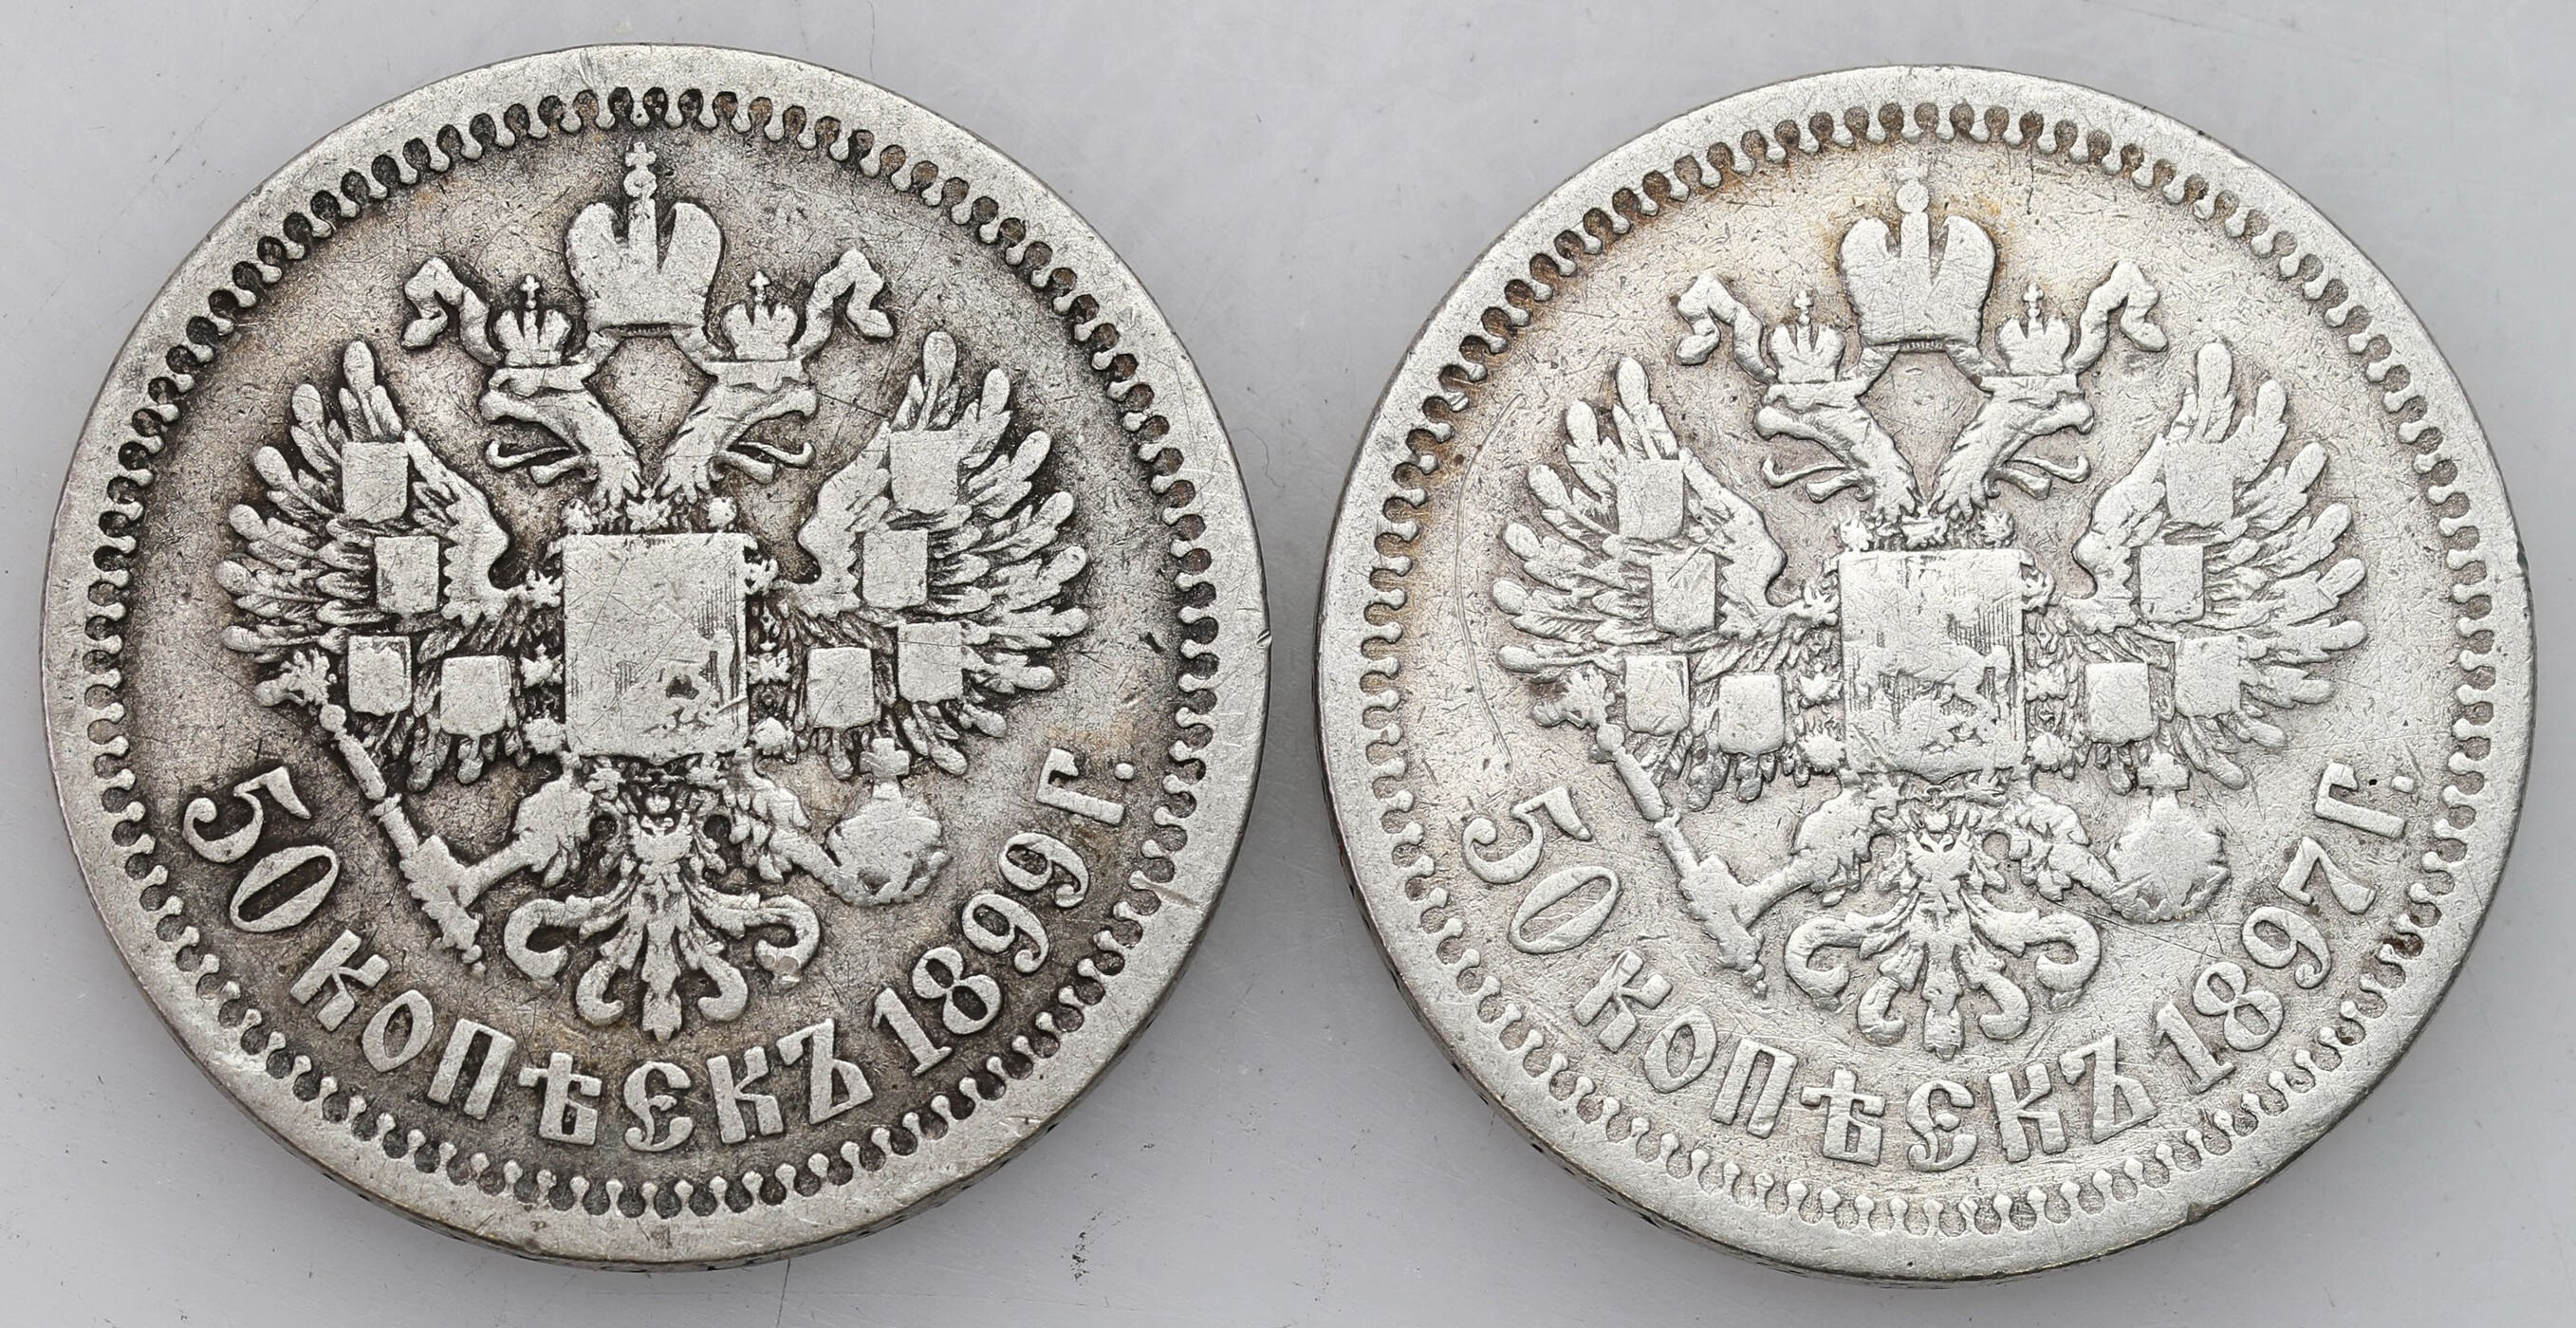 Rosja. Mikołaj II. 50 kopiejek (1/2 rubla) 1897 i 1899 ★, Paryż, zestaw 2 monet